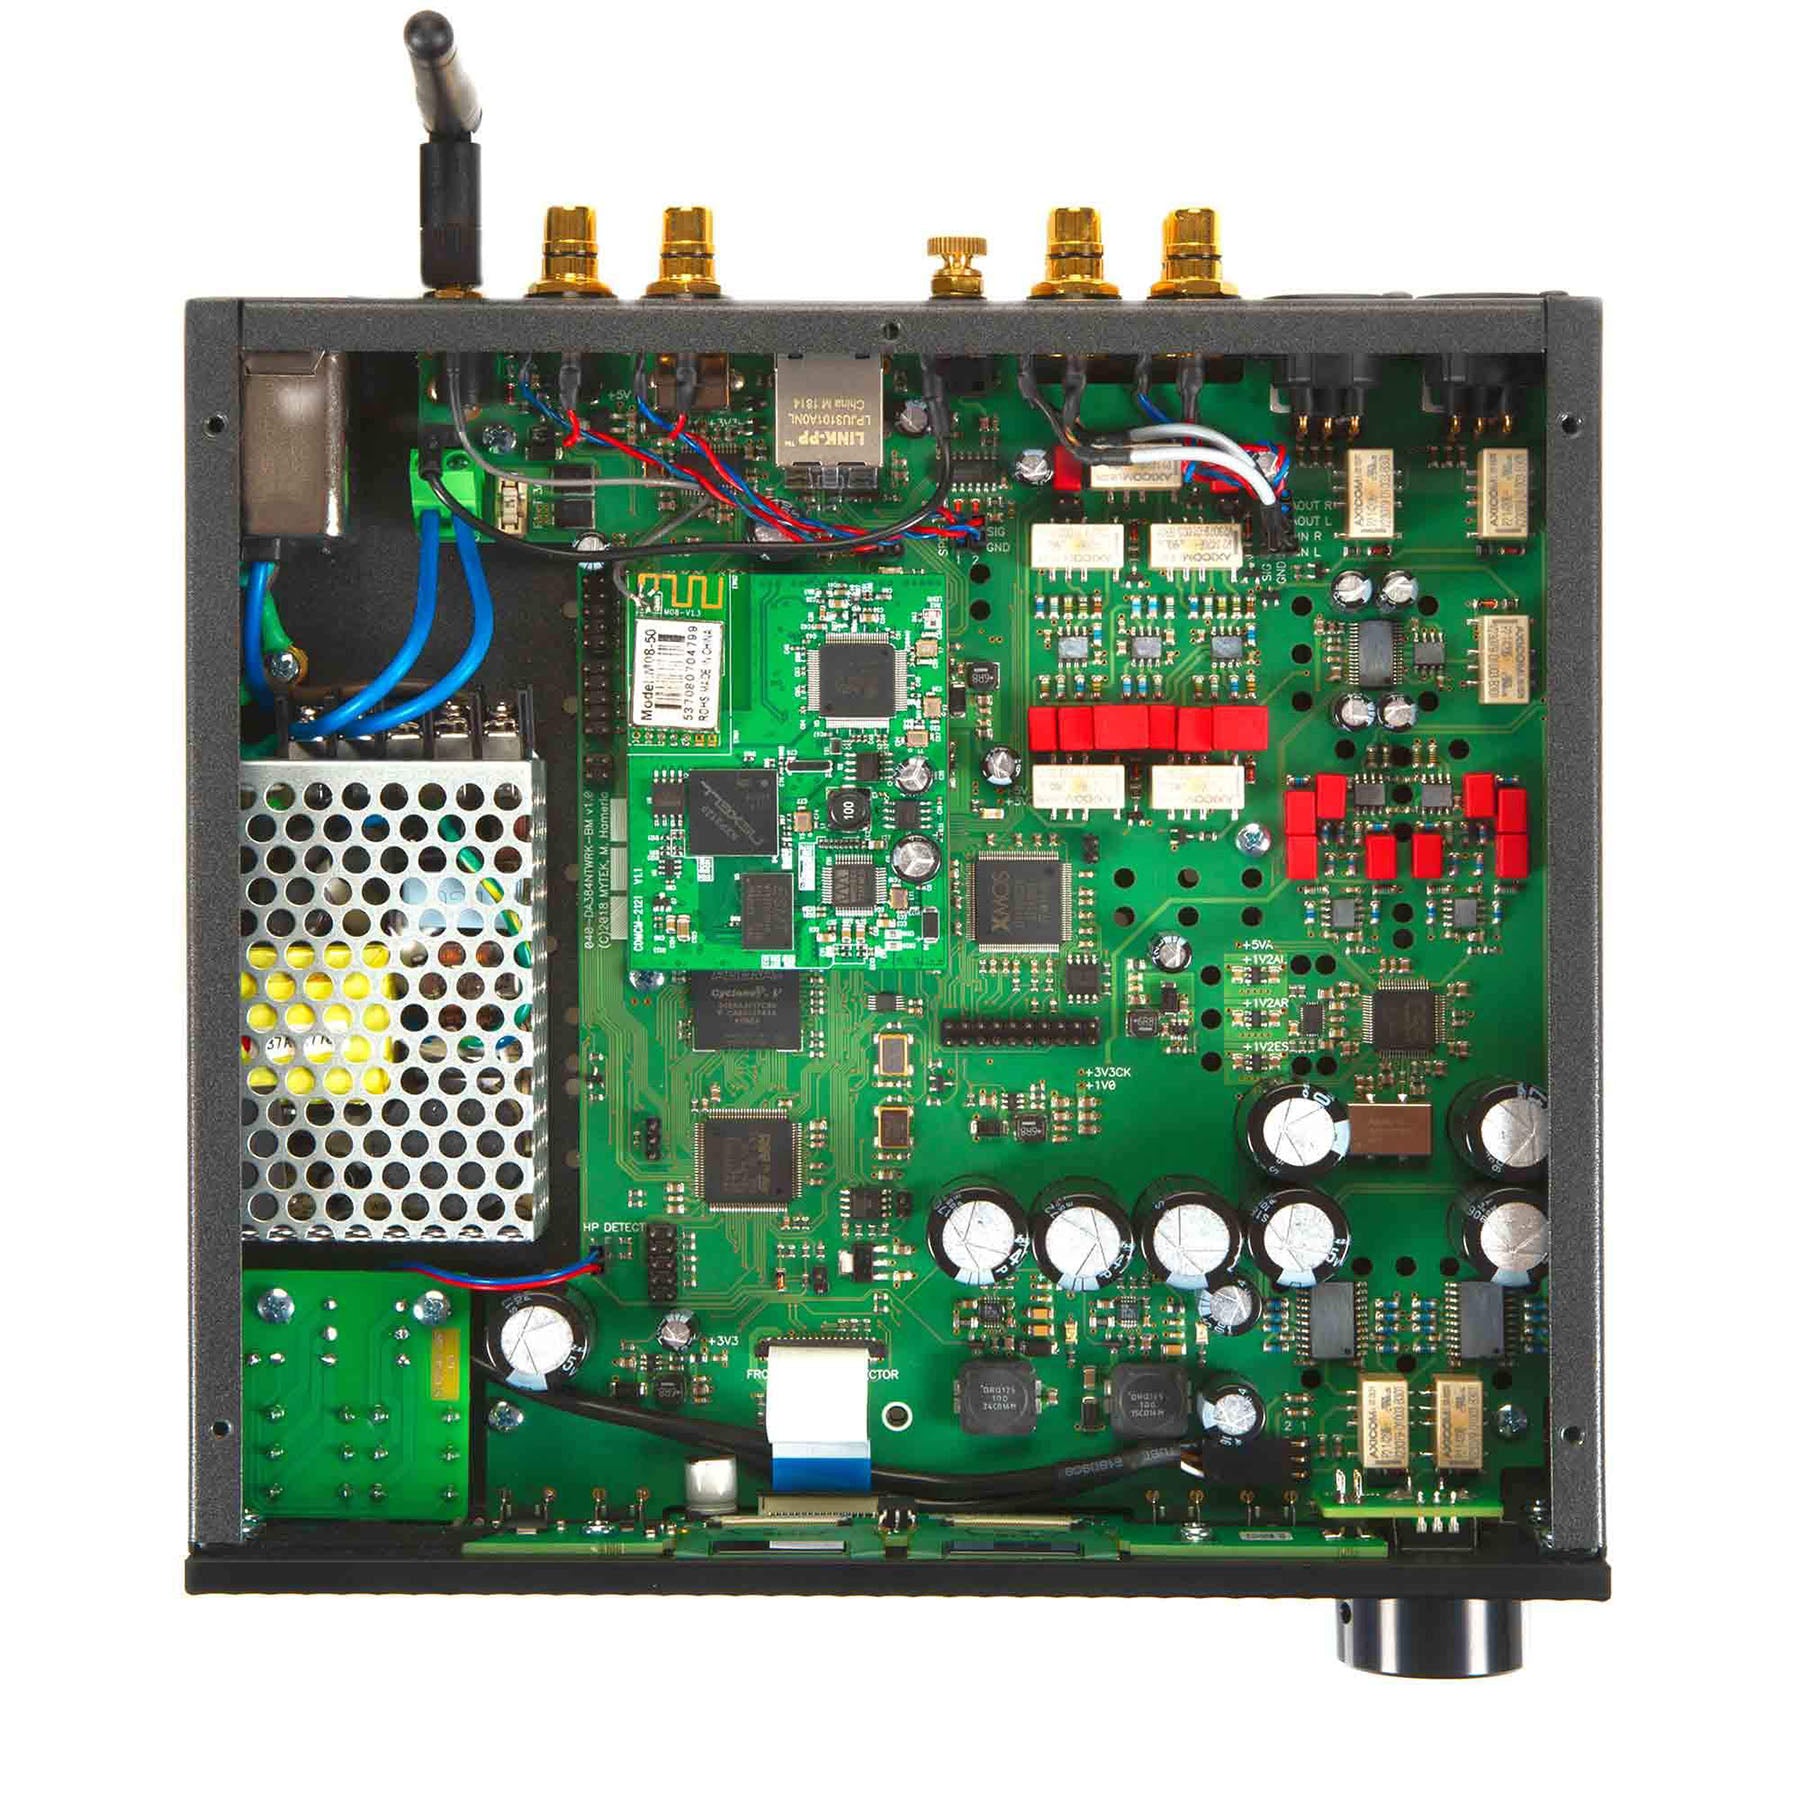 Mytek Brooklyn Bridge / Reference Stereo Preamplifier / Streamer / DAC / Headphone Amplifier